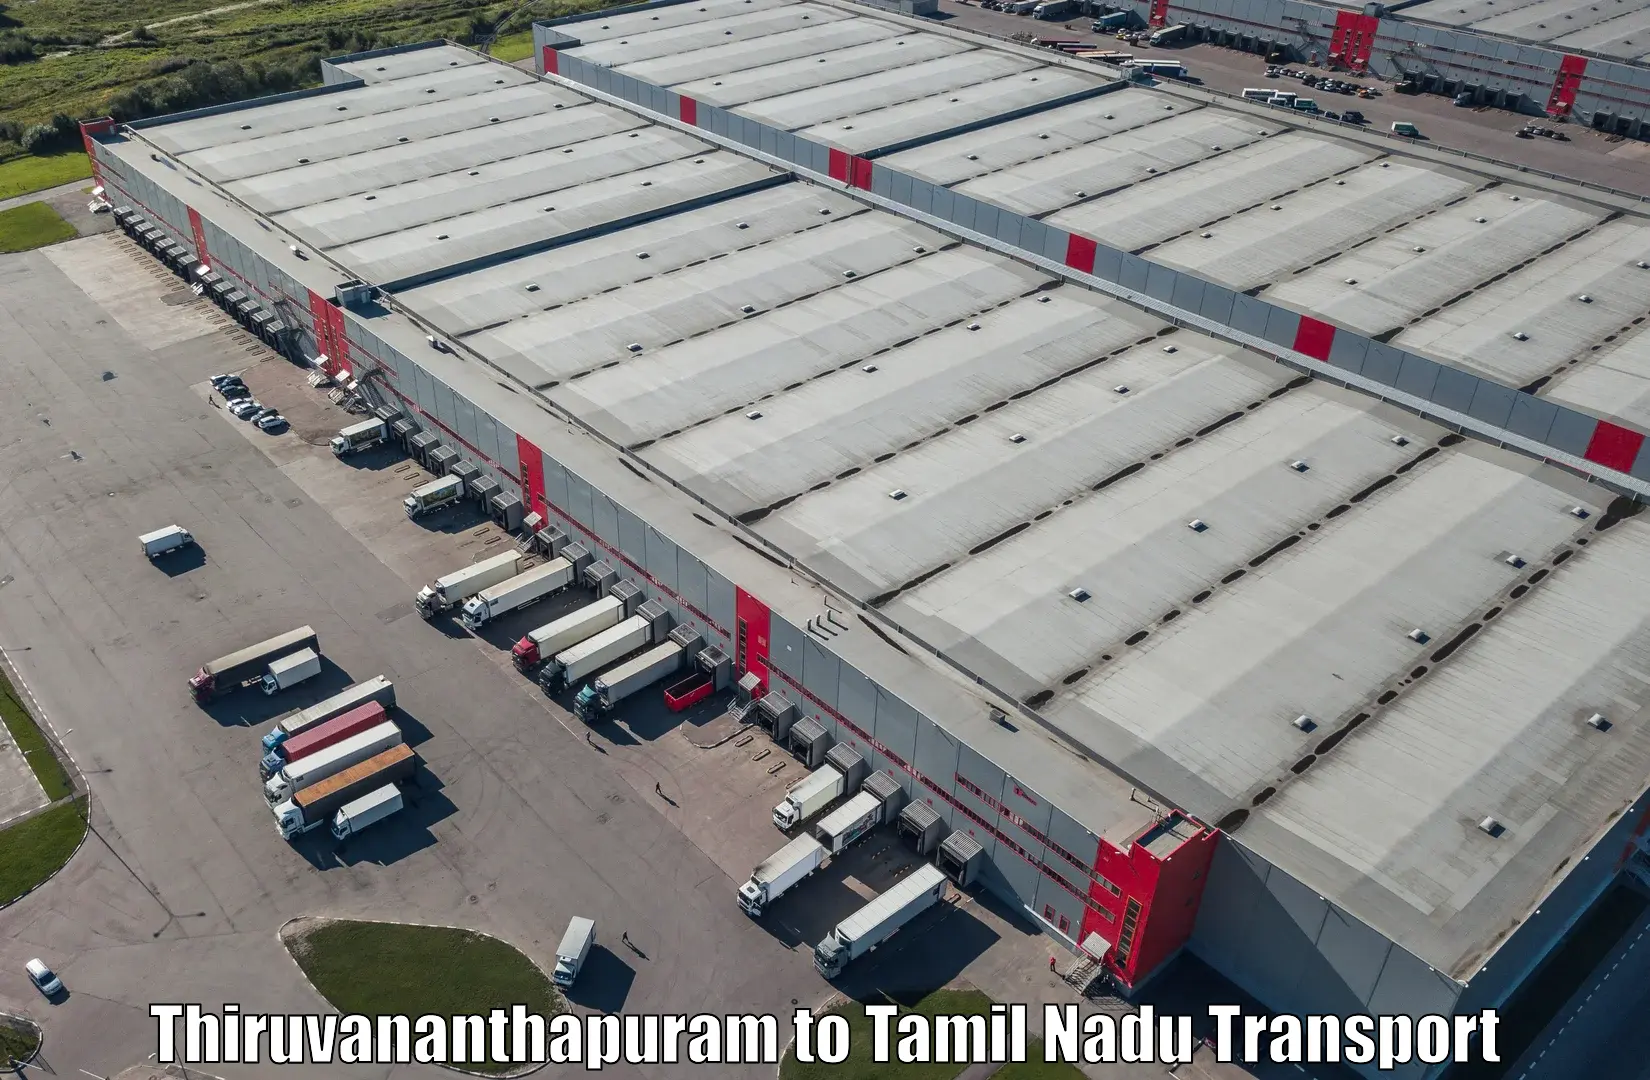 Online transport service Thiruvananthapuram to Sivakasi